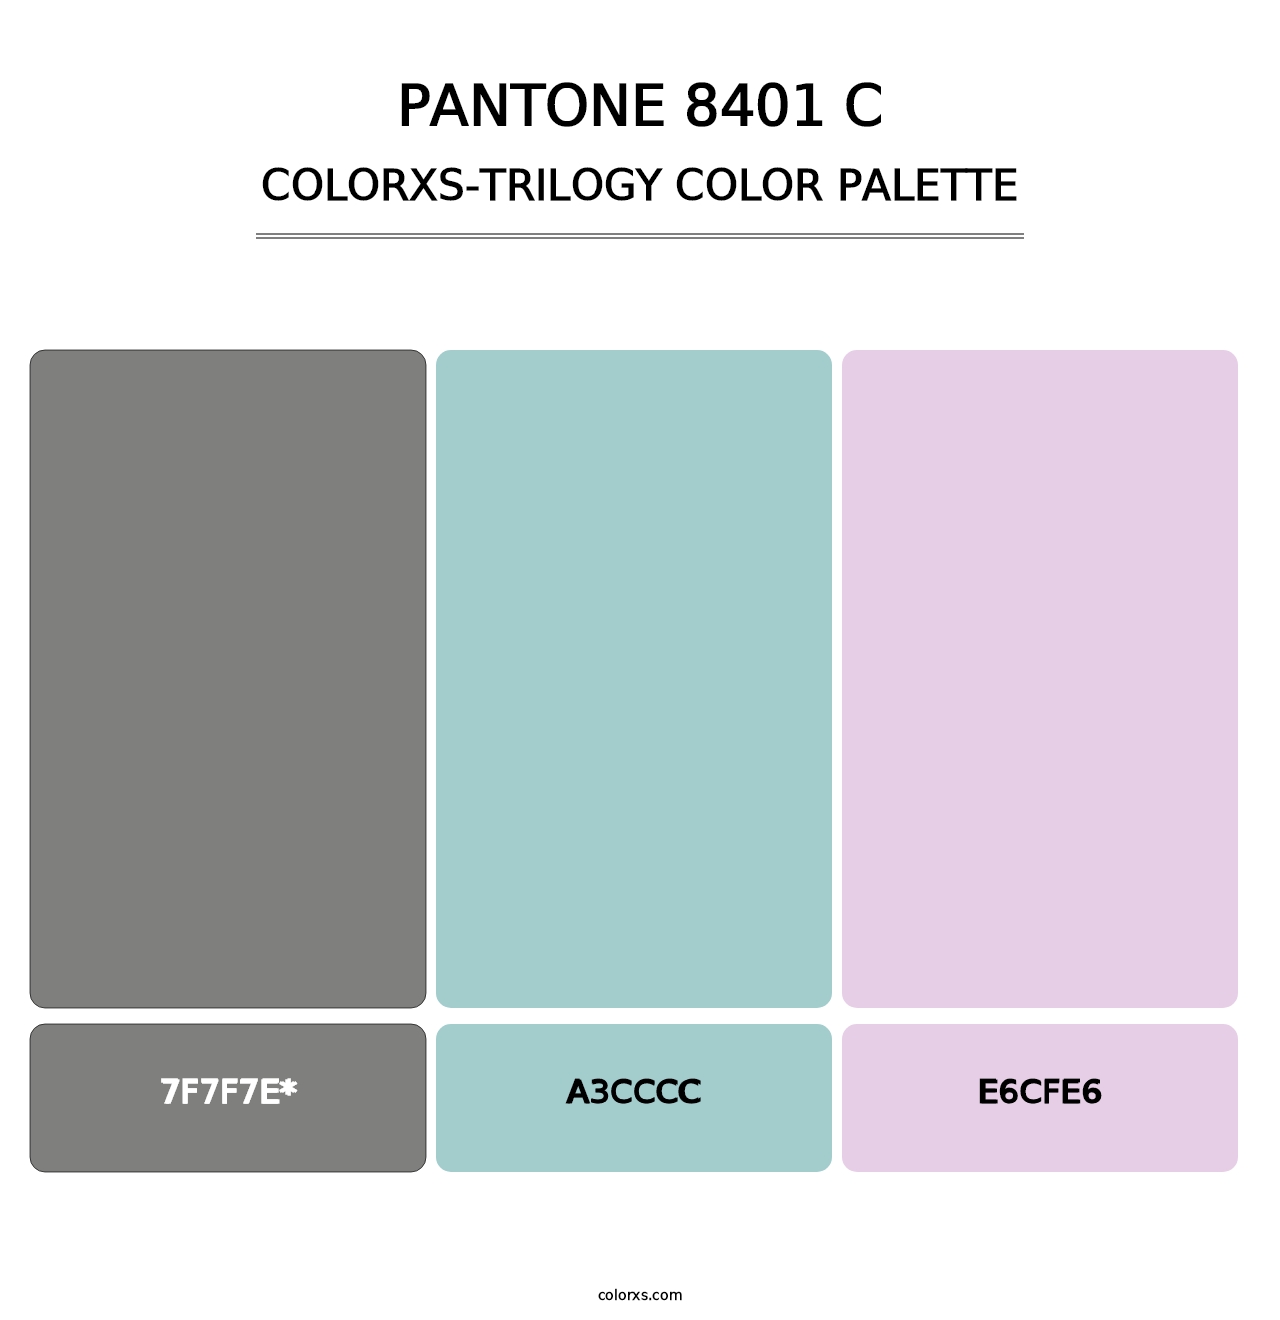 PANTONE 8401 C - Colorxs Trilogy Palette